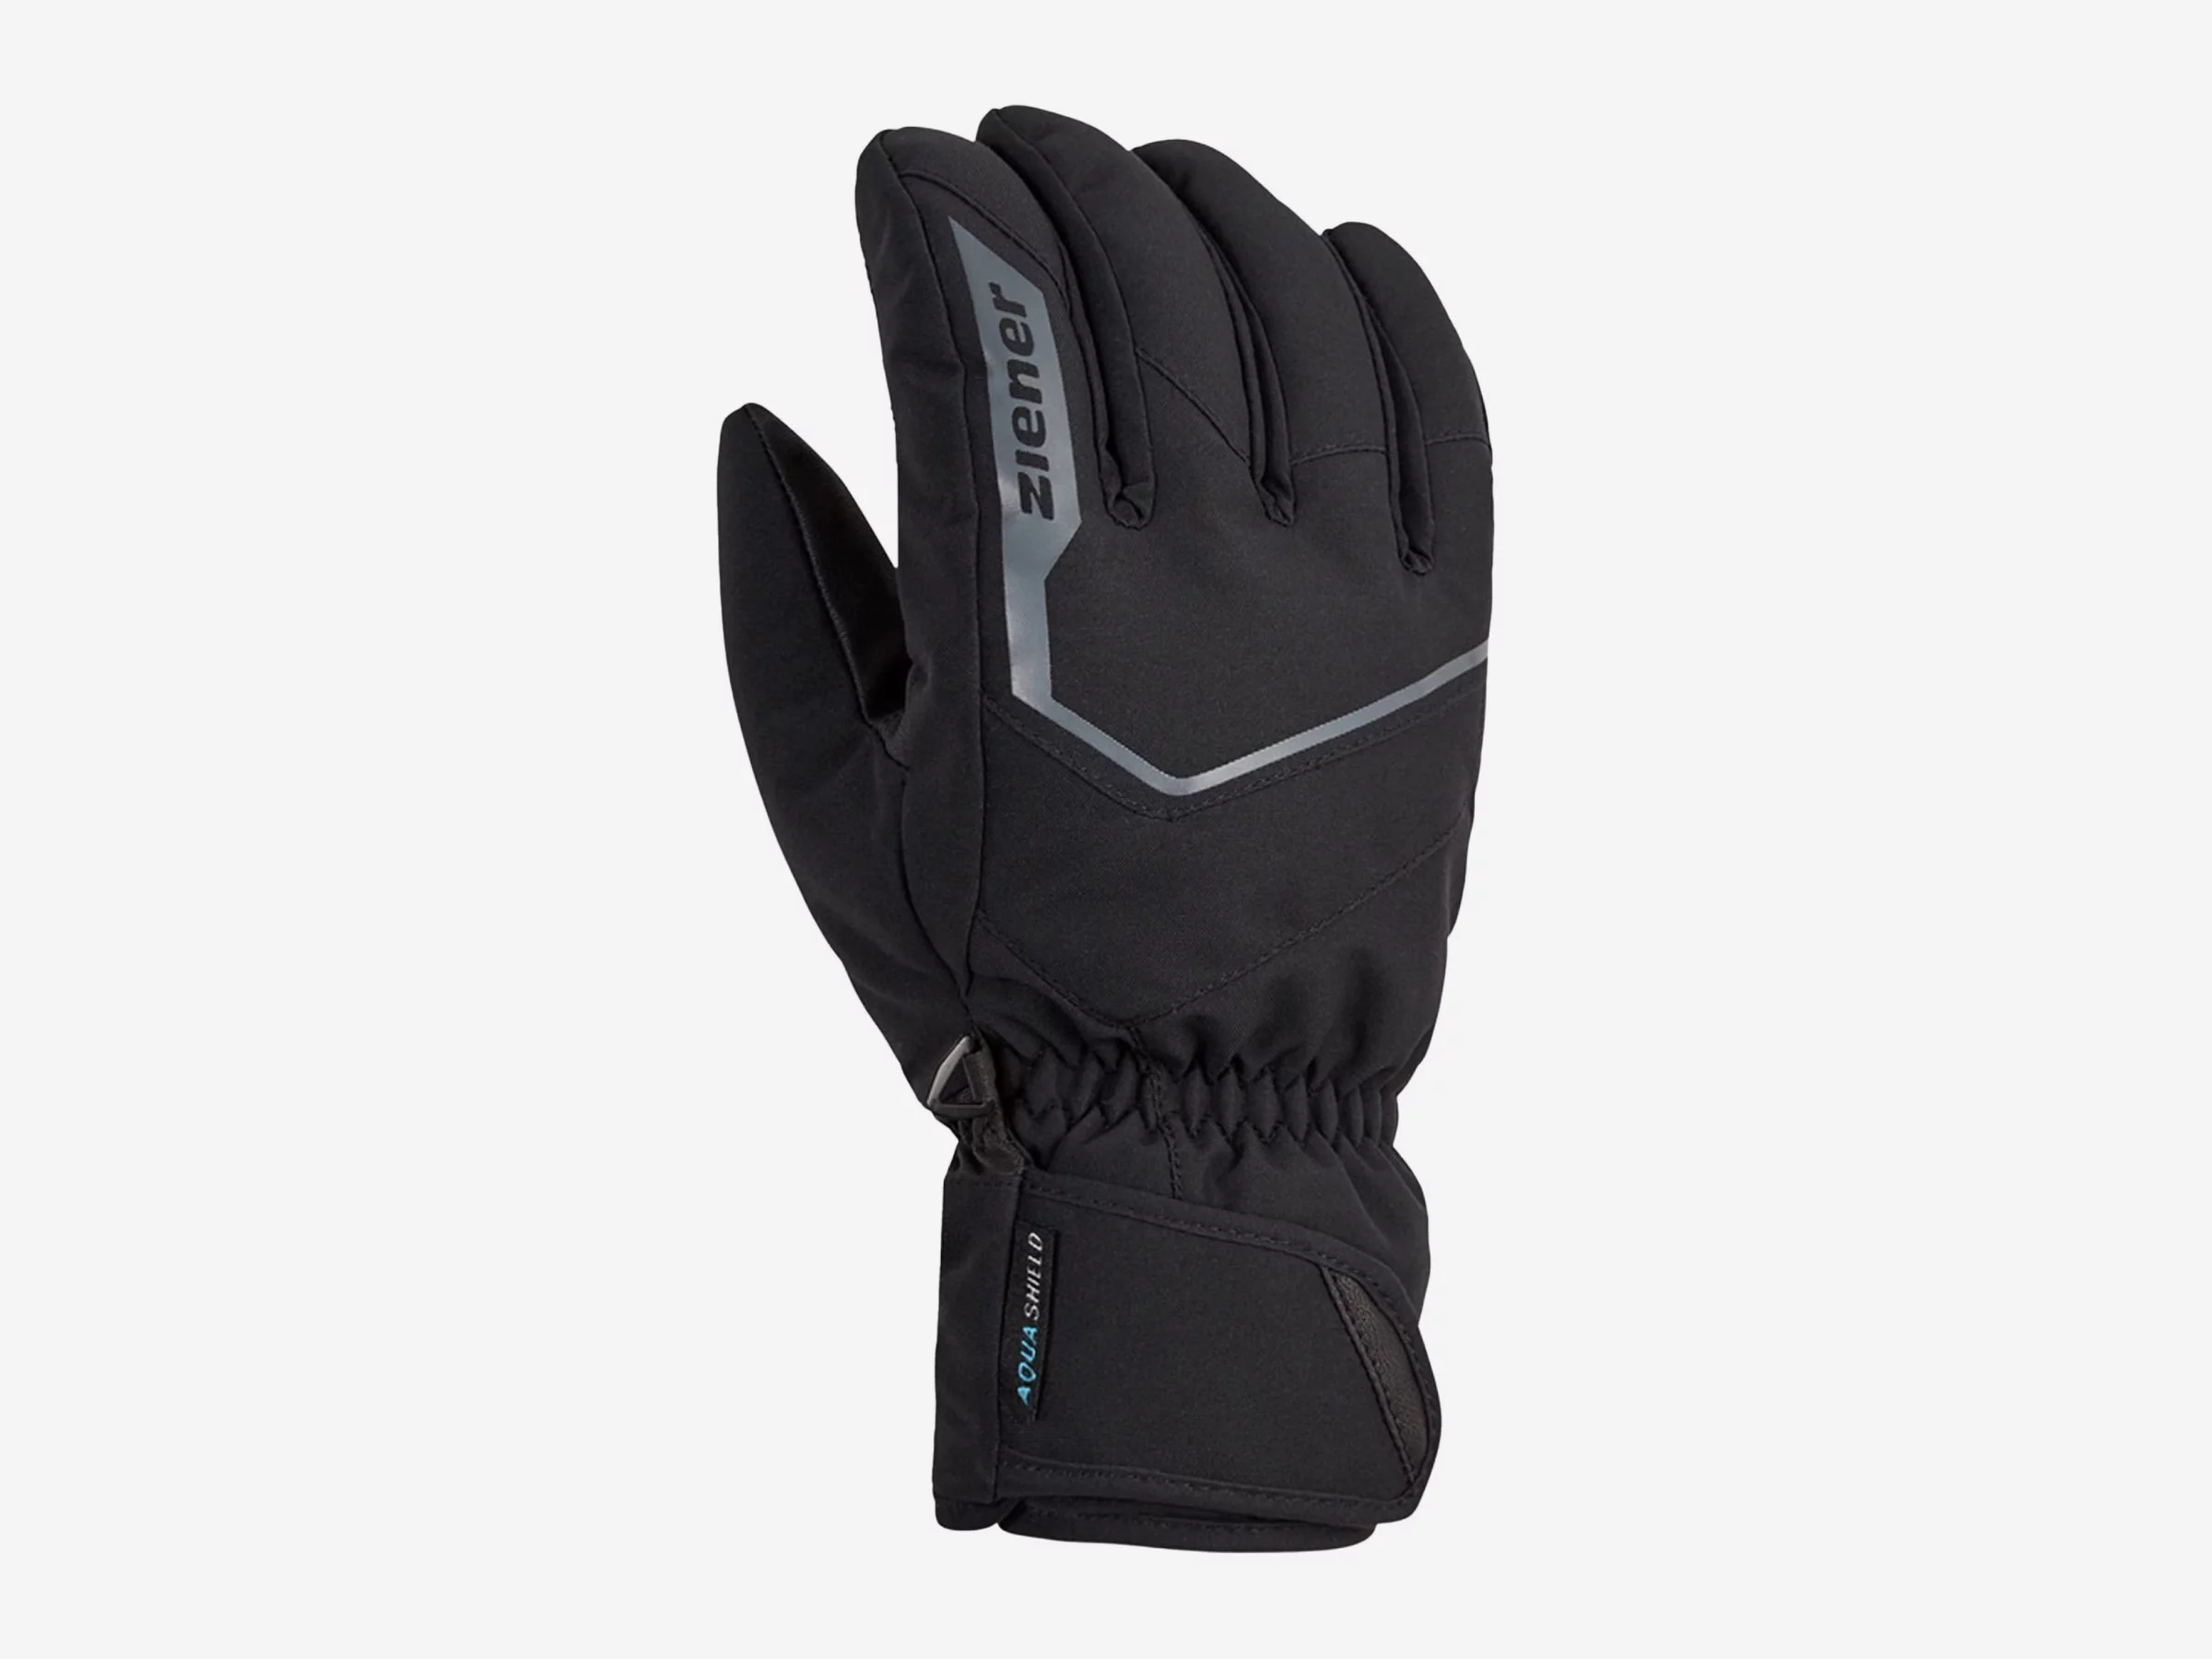 about Handschuhe | GARIGON Unisex AS(R) Ziener sports